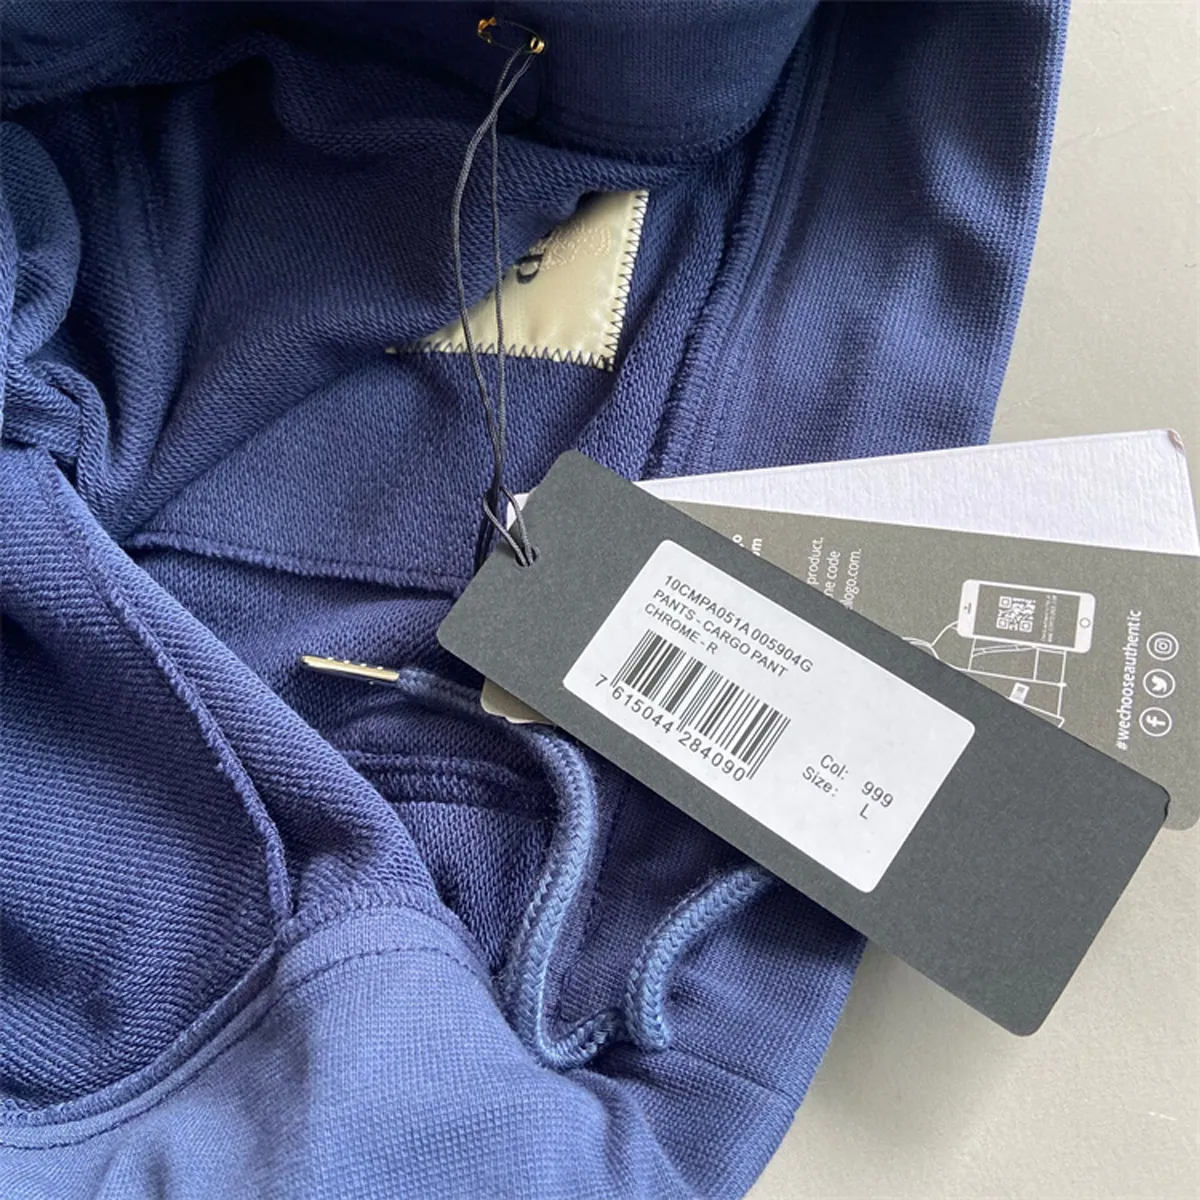 3 cores calças táticas para homens da marca de moda ao ar livre Tamanho da empresa M-2xl Pocket Sweatpante Z